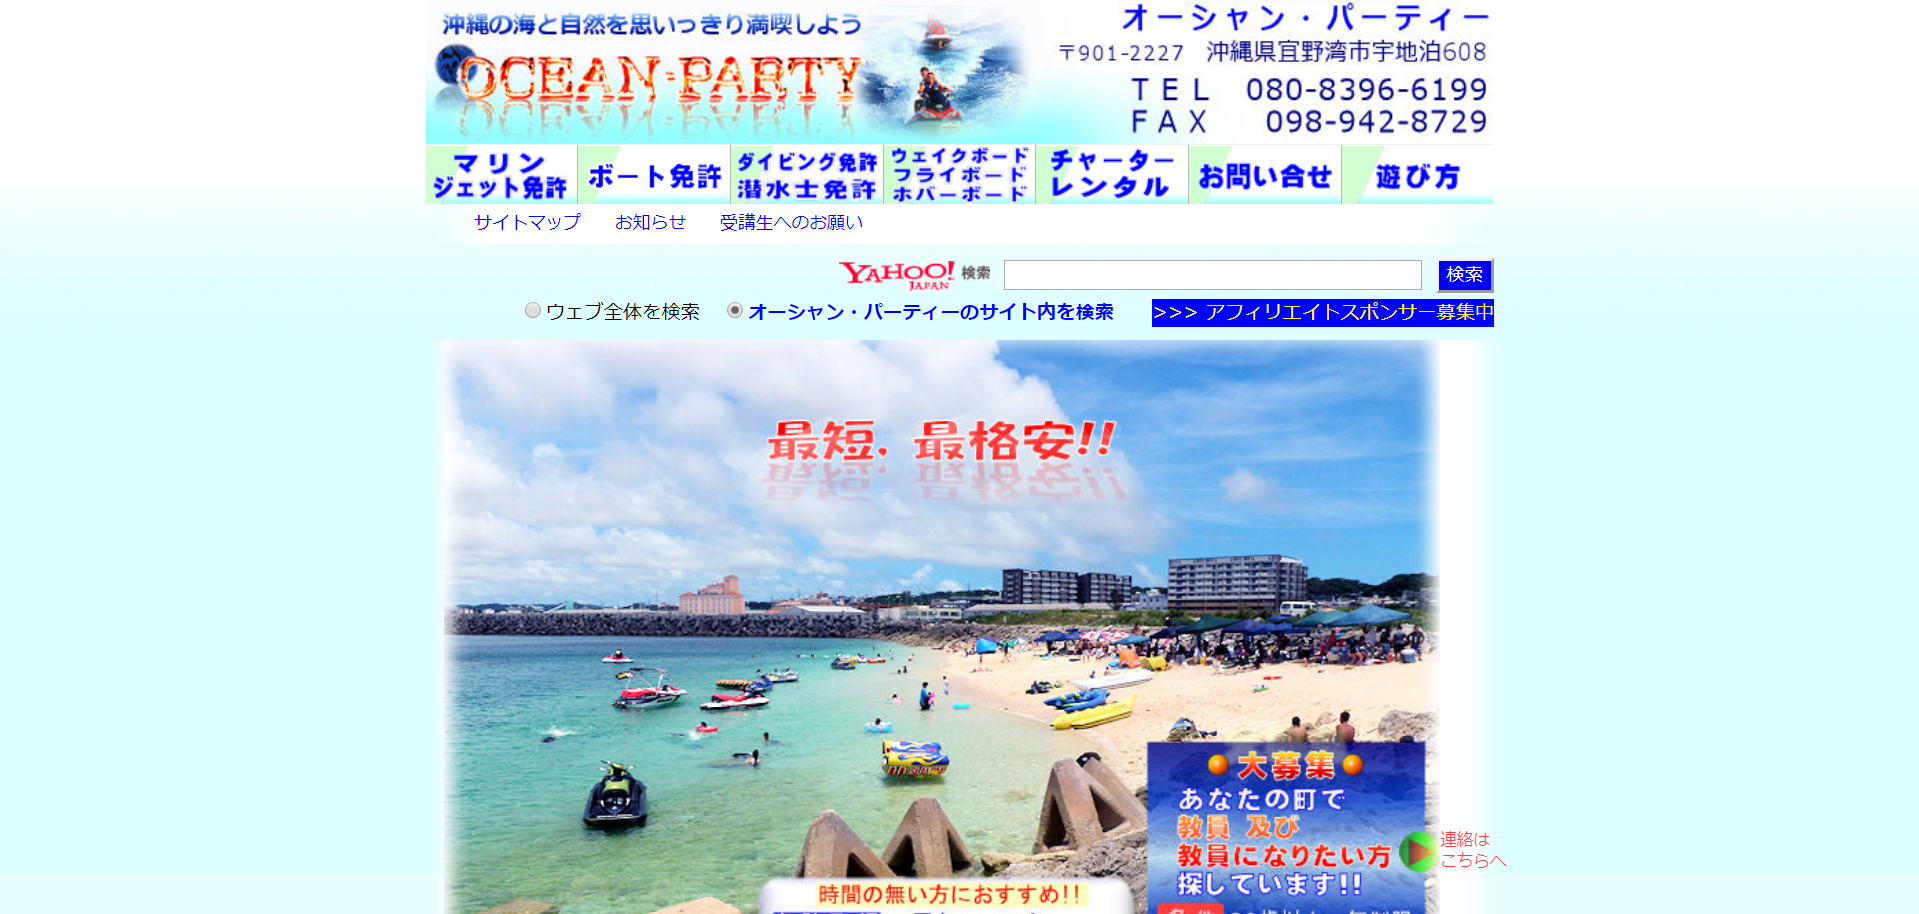 沖縄県 オーシャン・パーティーで小型船舶免許を取得